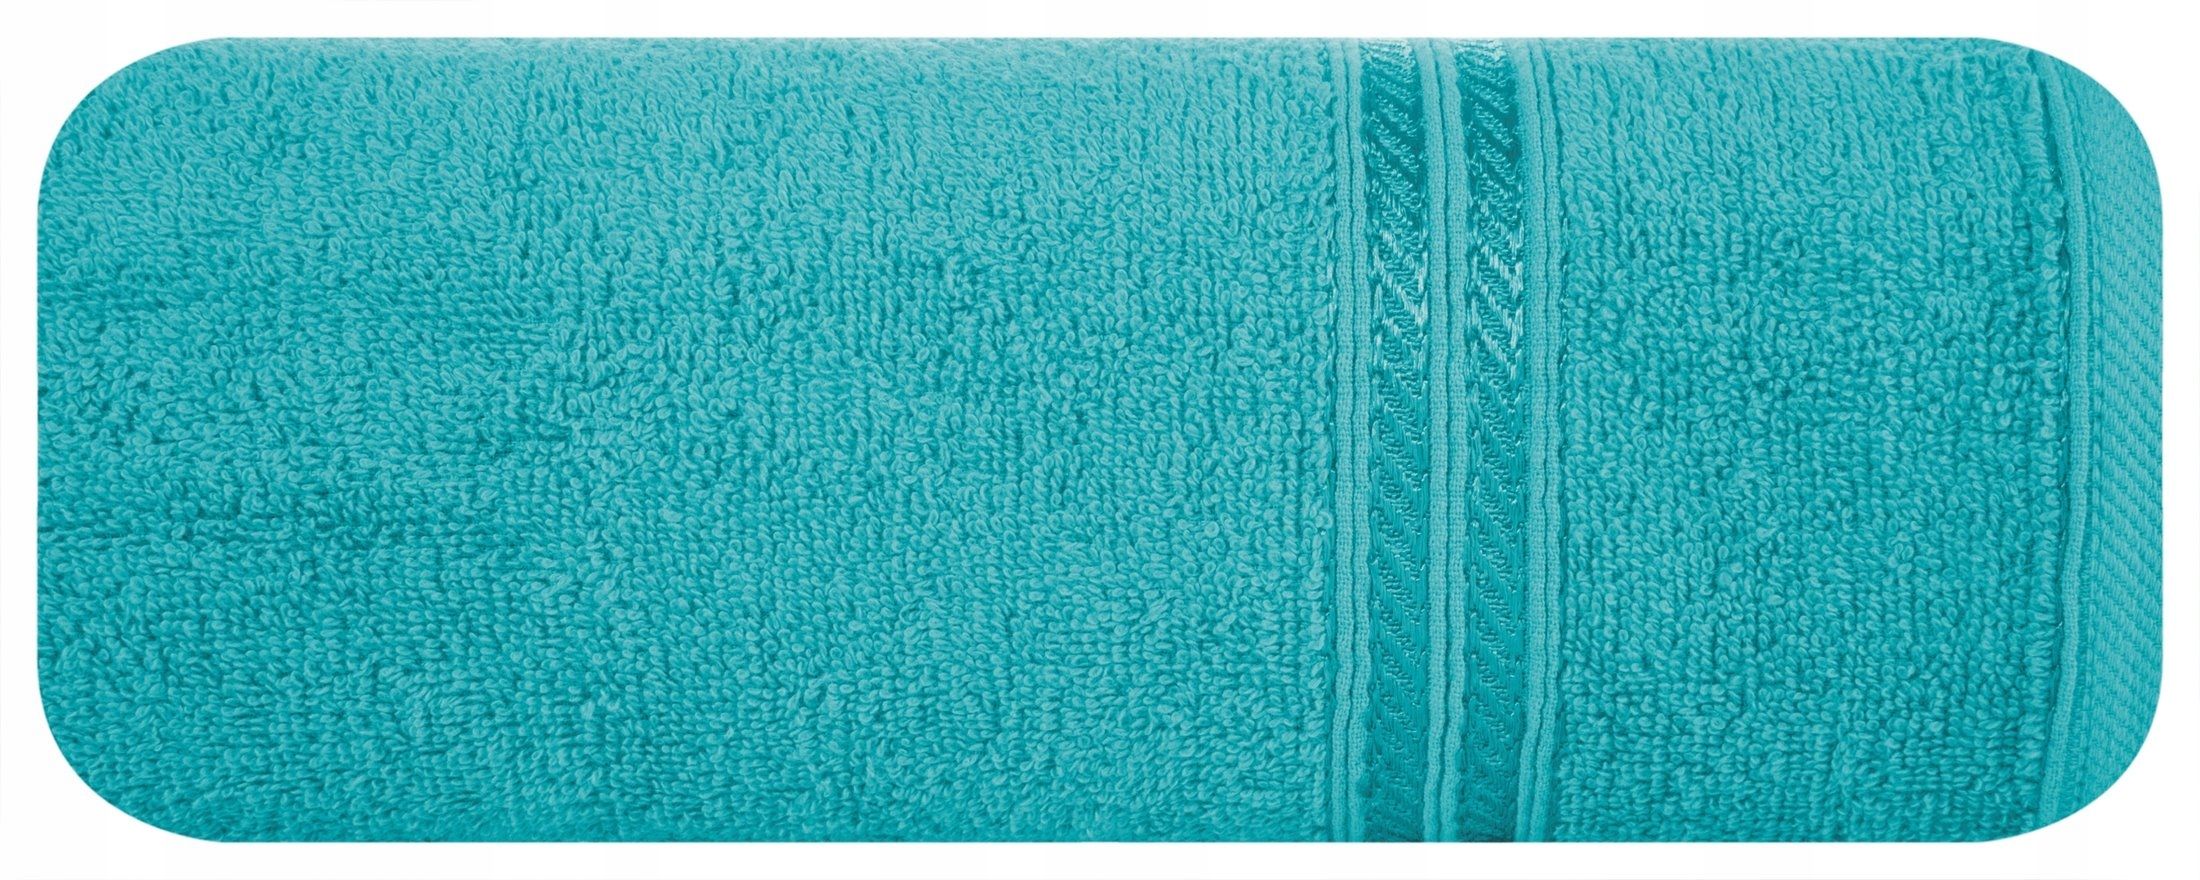 Ręcznik 50x90 błękitny 450g/m2